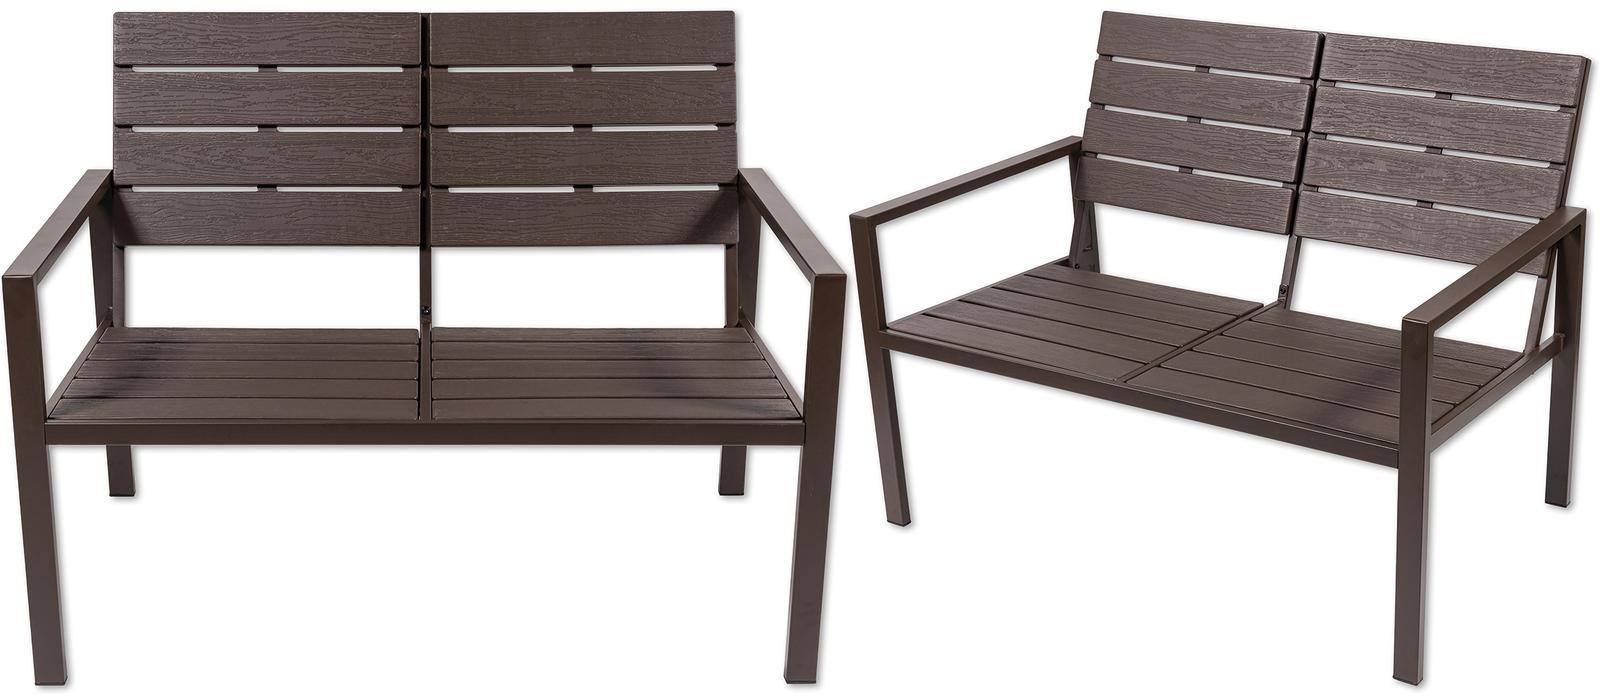 Zestaw mebli ogrodowych kanapa stół krzesła ogrodowe Heckermann® AC-WS008-1 nr. 10